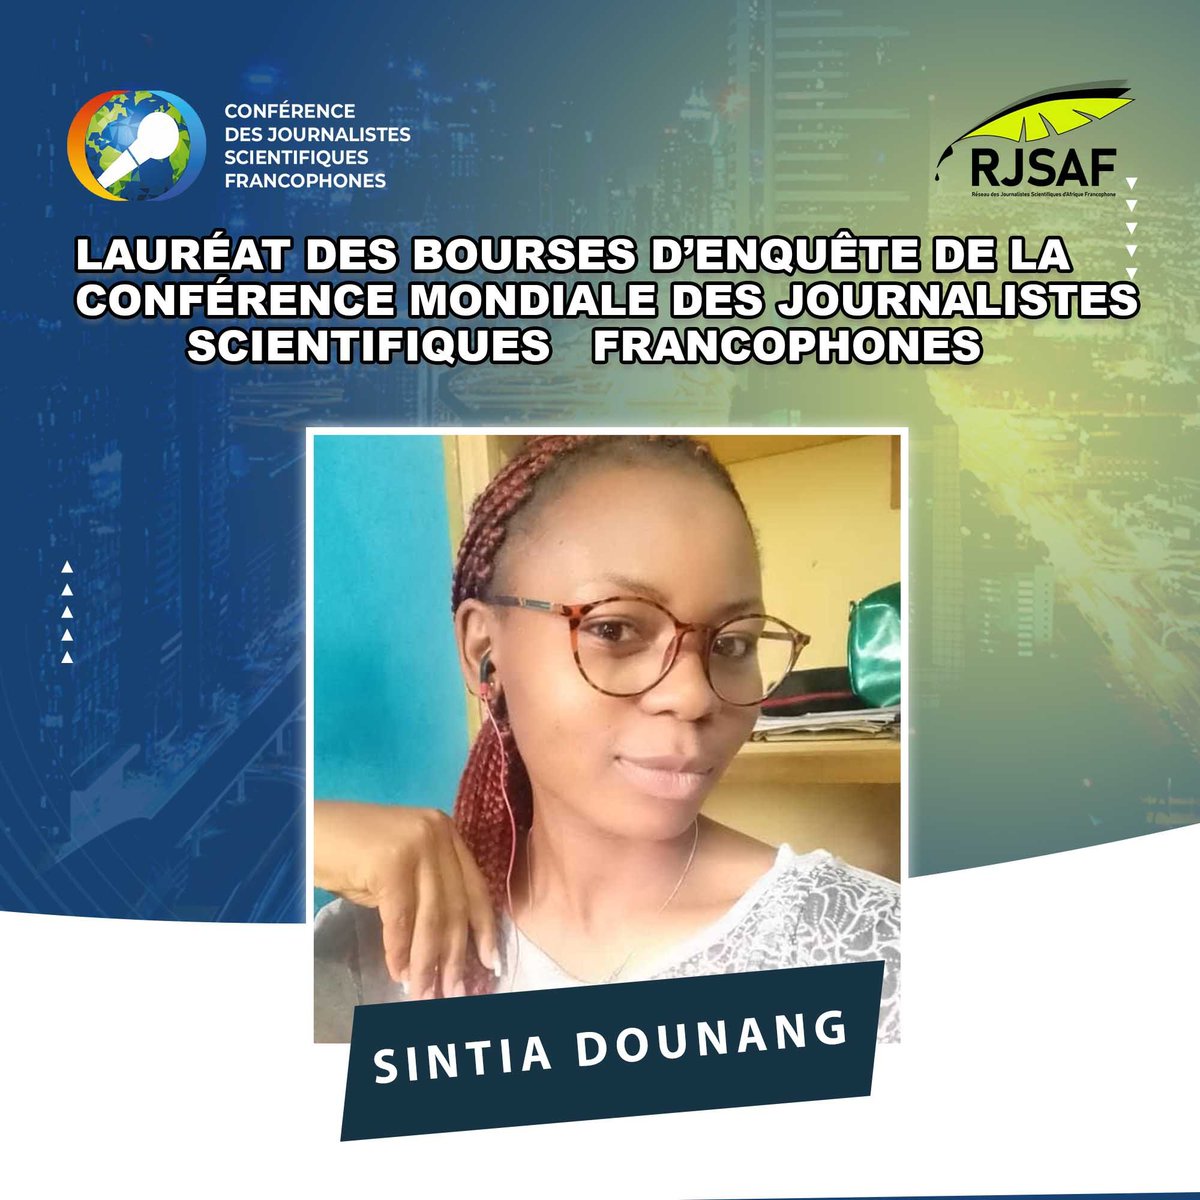 Dounang Saha Mayva Sintia est une journaliste camerounaise & étudiante en Management environnemental et développement durable. Elle s'intéresse aux questions liées à l'environnement & au dév. durable. Elle est l'une des lauréates de notre bourse d'enquête sur la crise climatique.